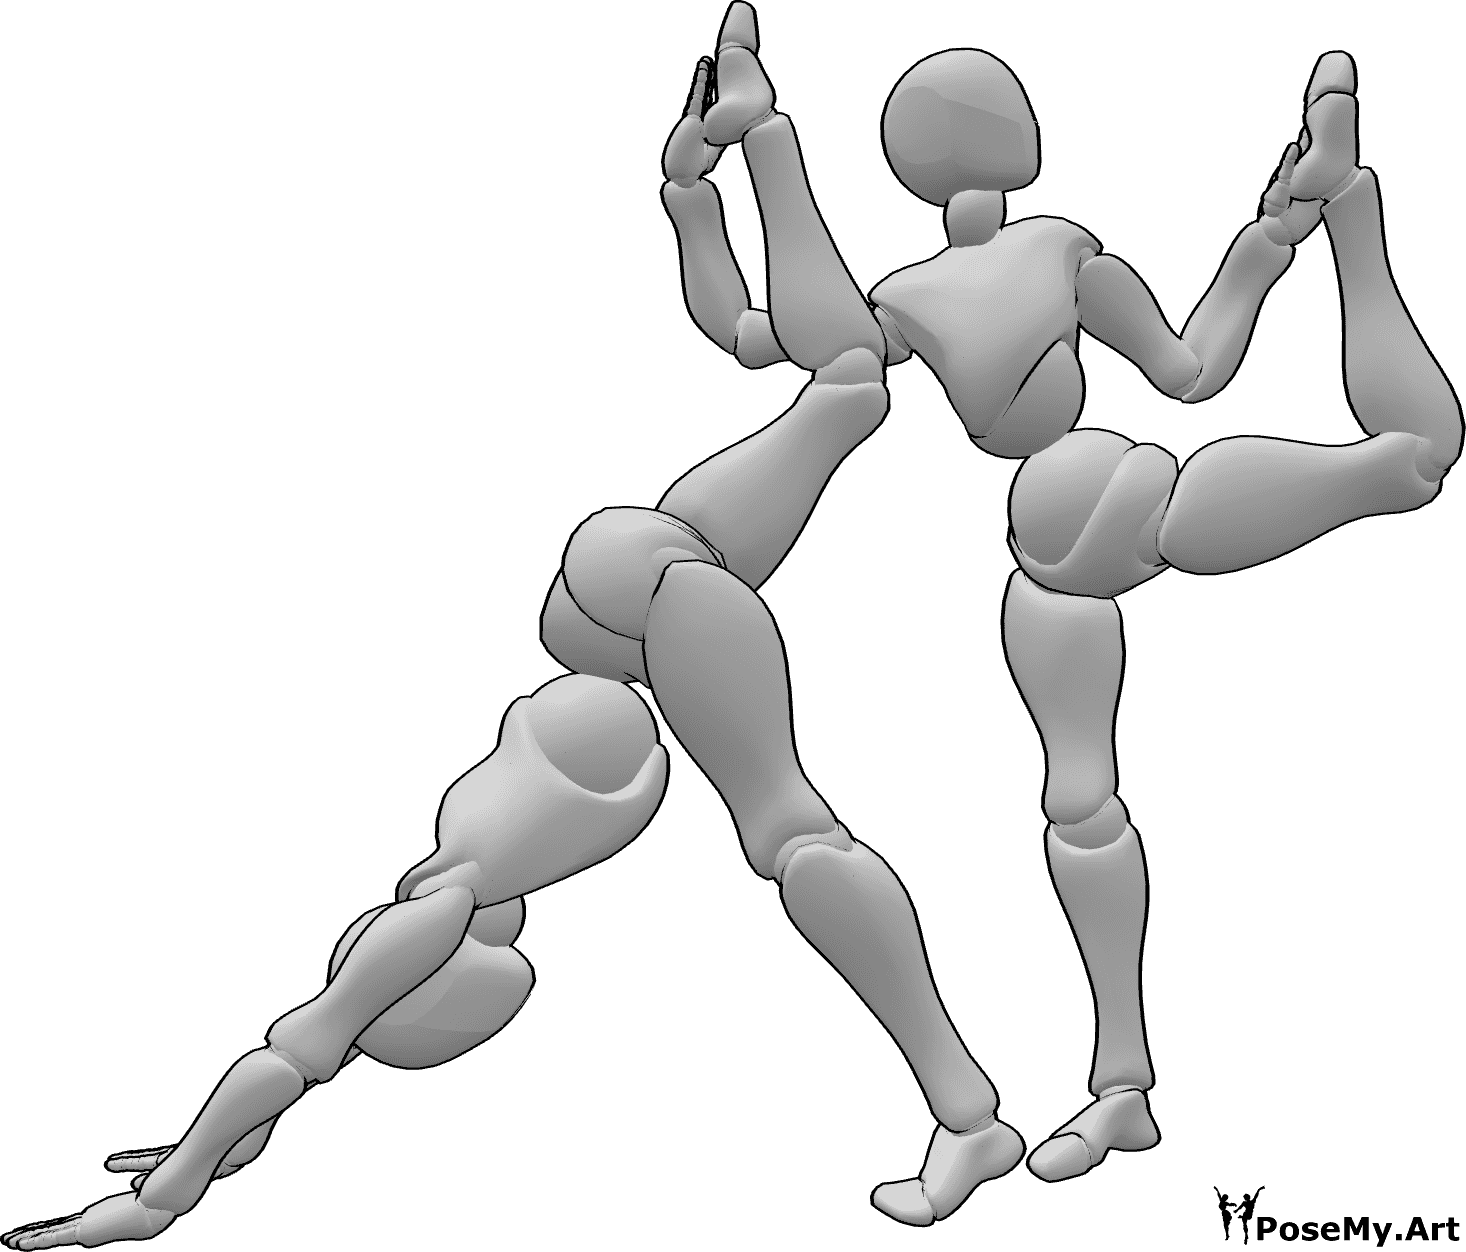 Riferimento alle pose- Posa ginnica in duo - Le donne fanno ginnastica insieme